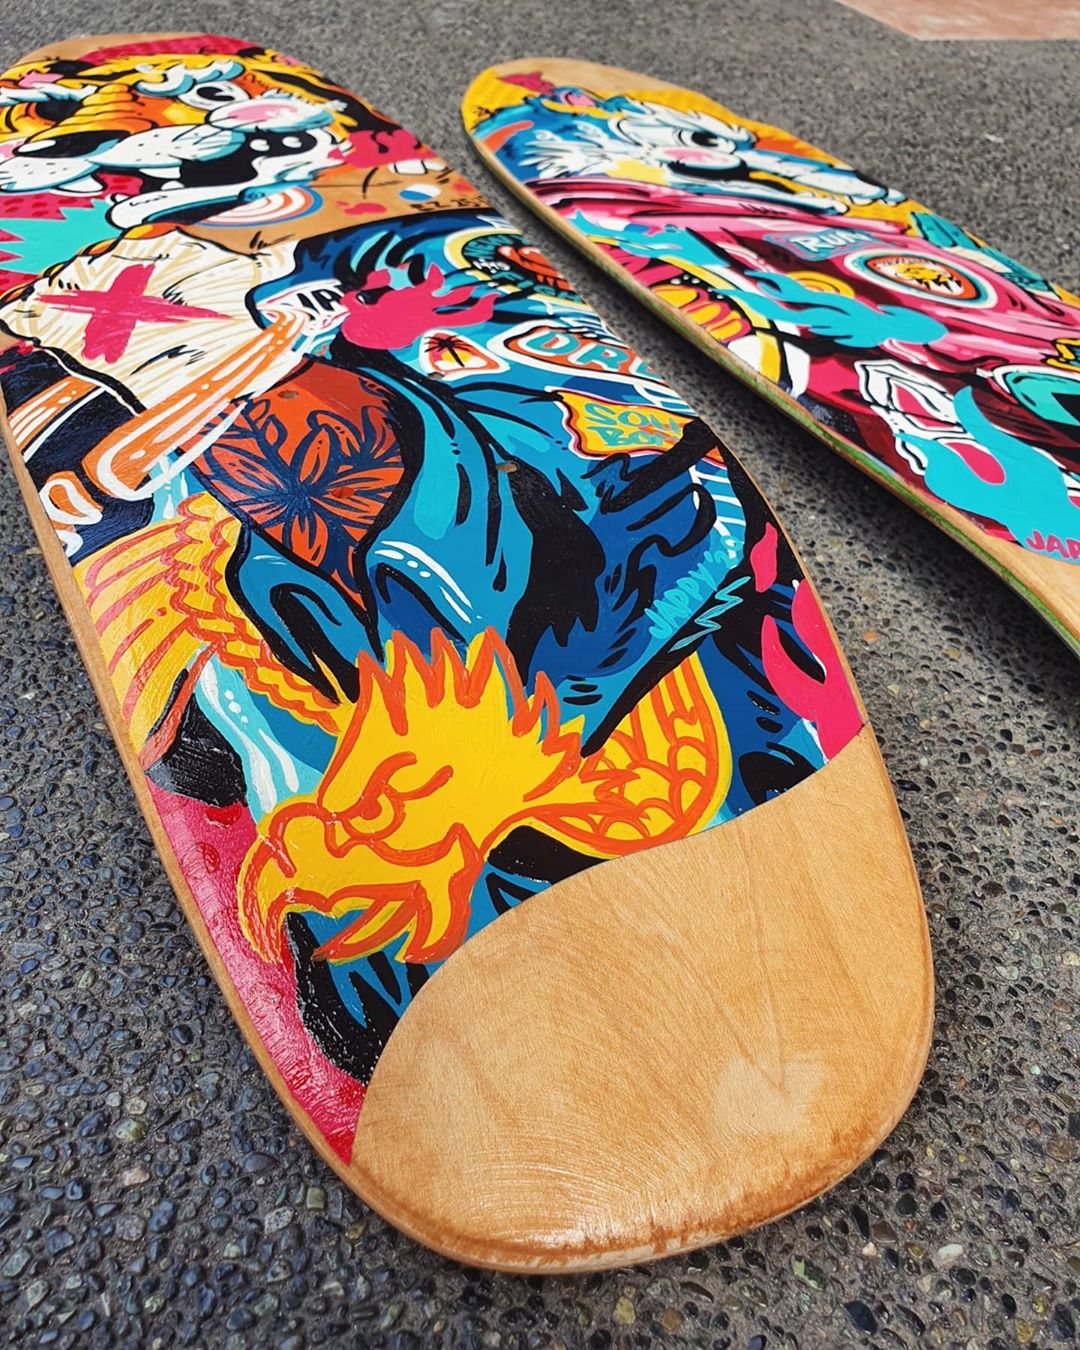 Custom Skateboards By Jappy Agoncillo 4.jpg